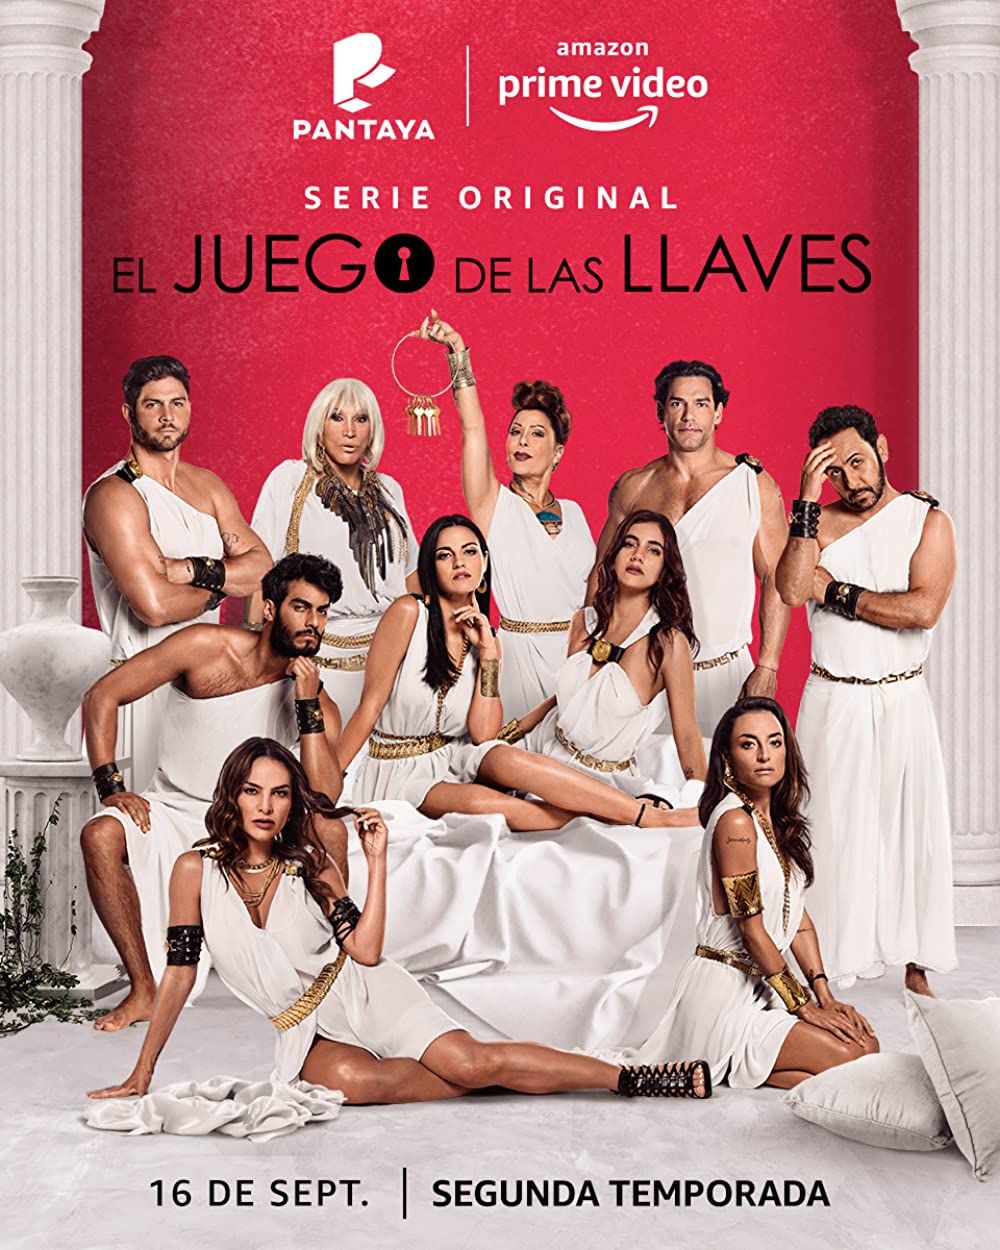 [18+] El juego de las llaves (2019) Season 2 Spanish Complete Series HDRip download full movie